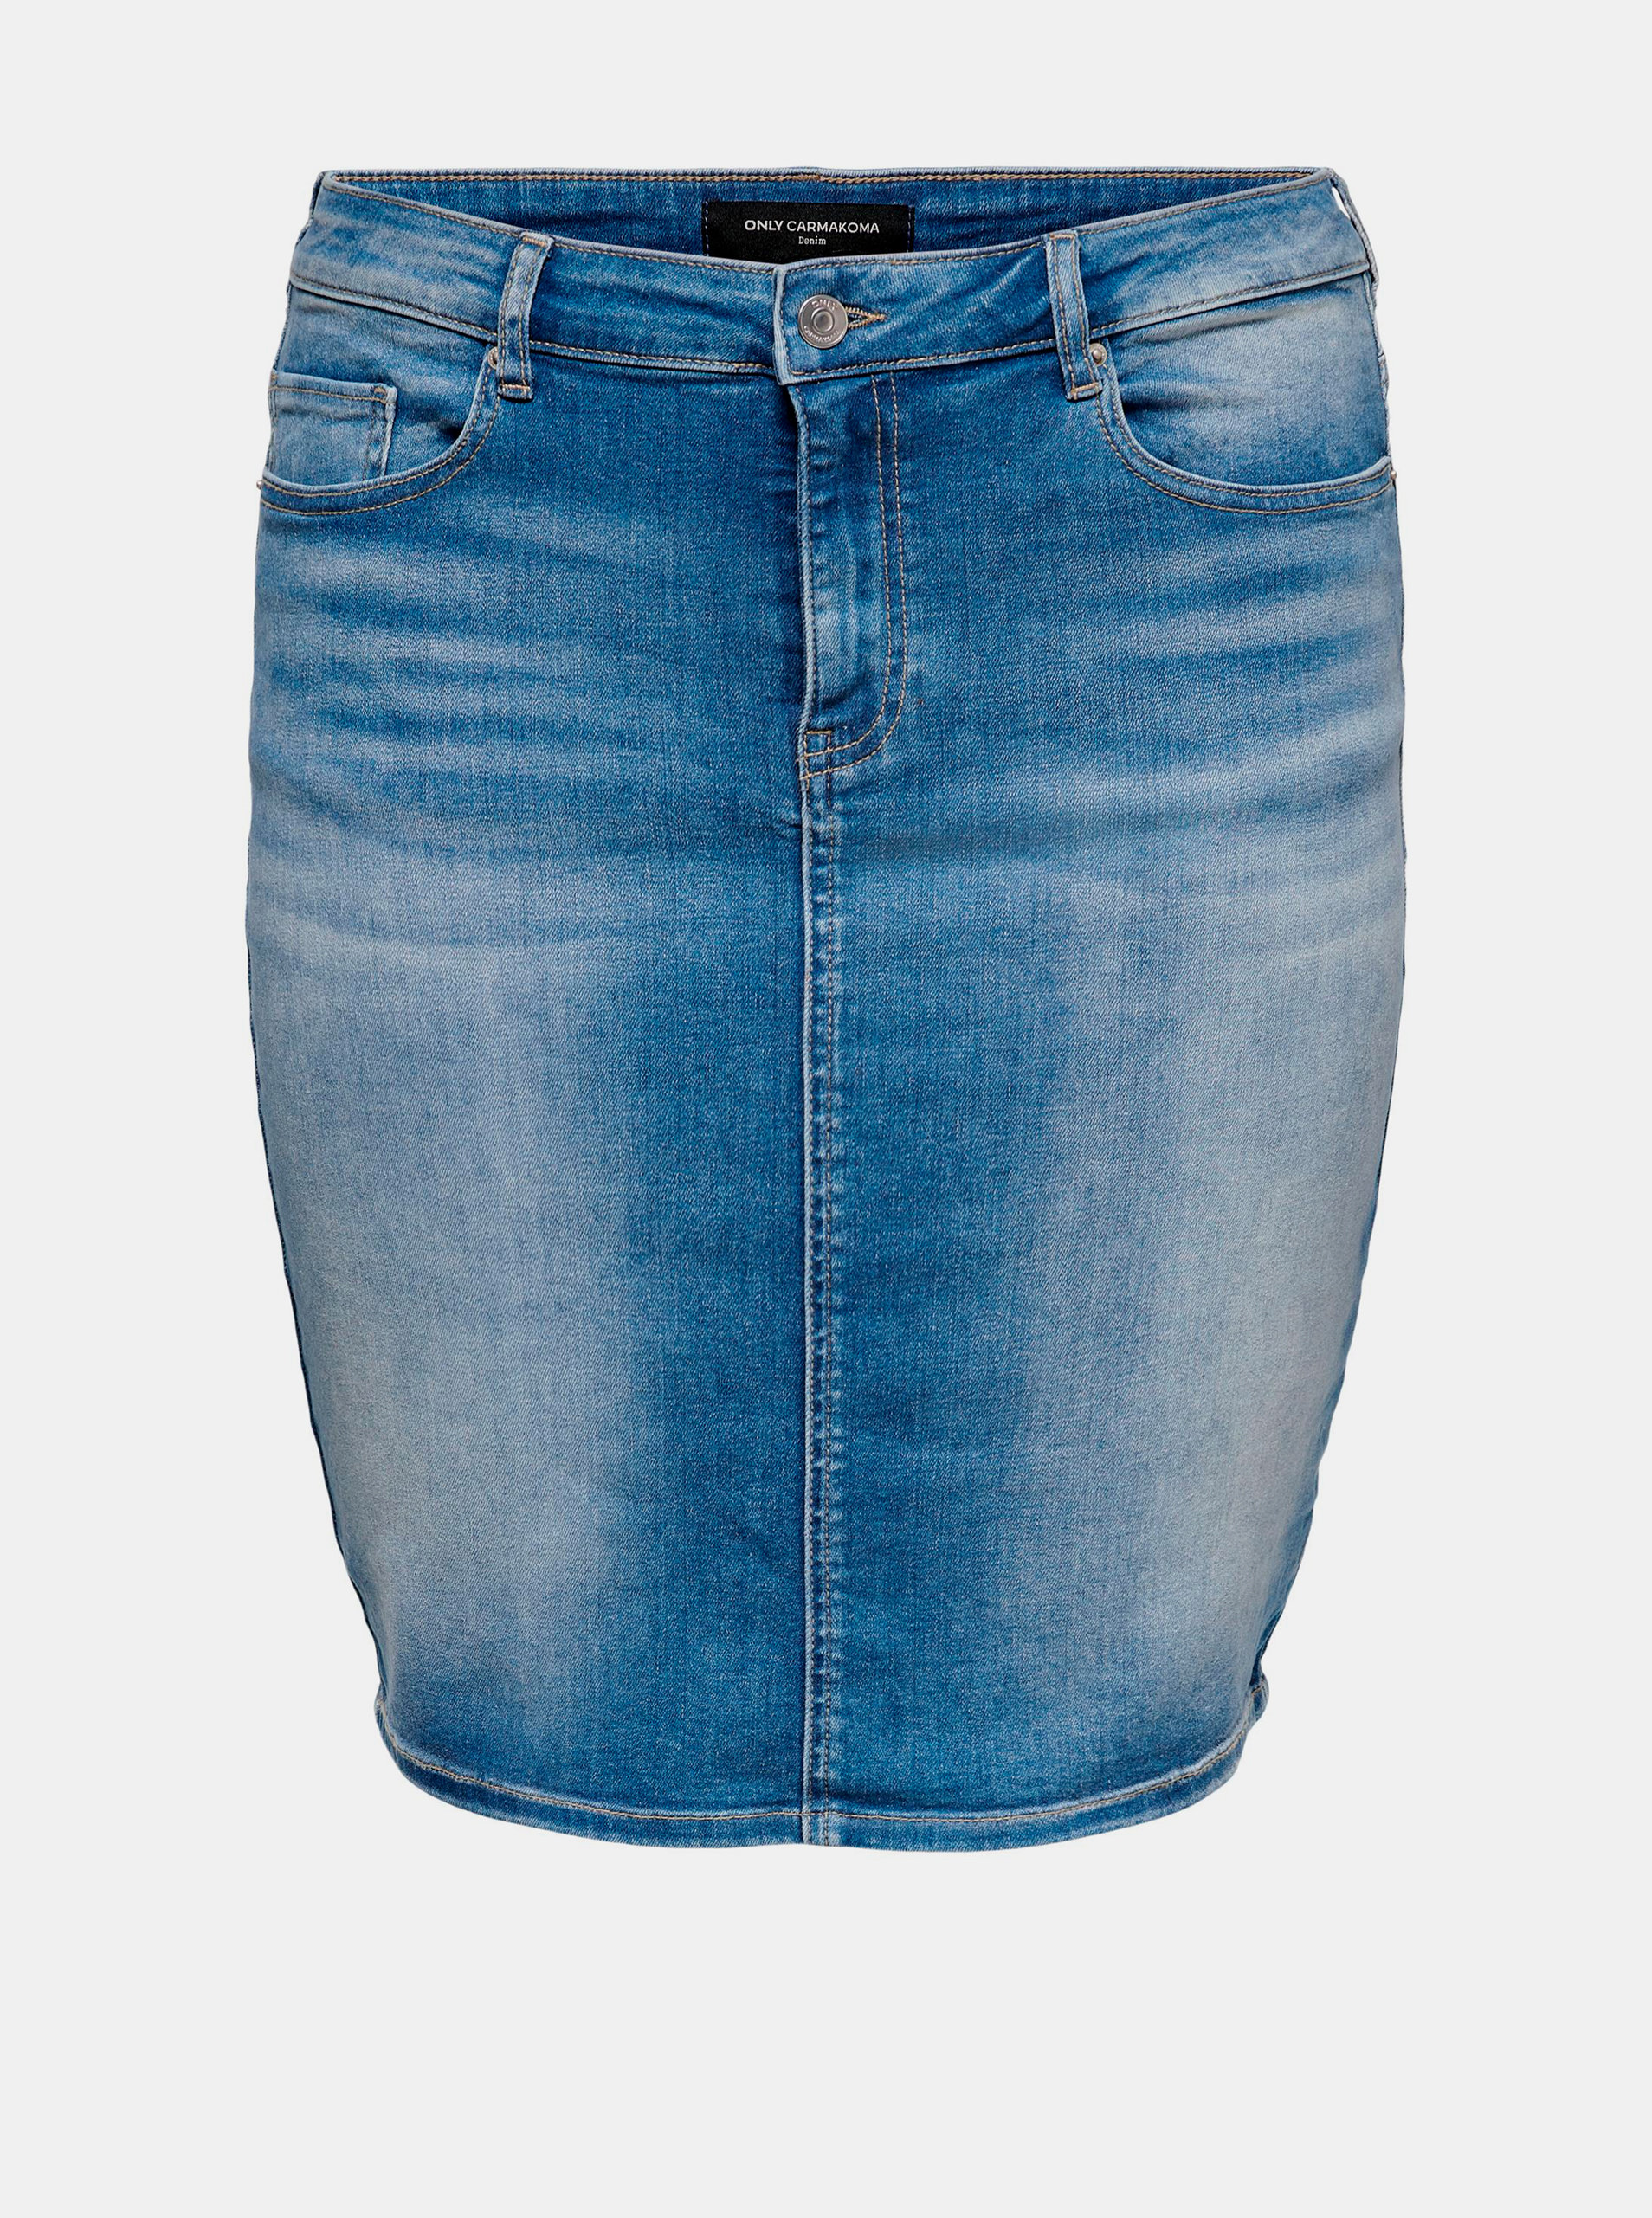 Fotografie Modrá džínová sukně ONLY CARMAKOMA